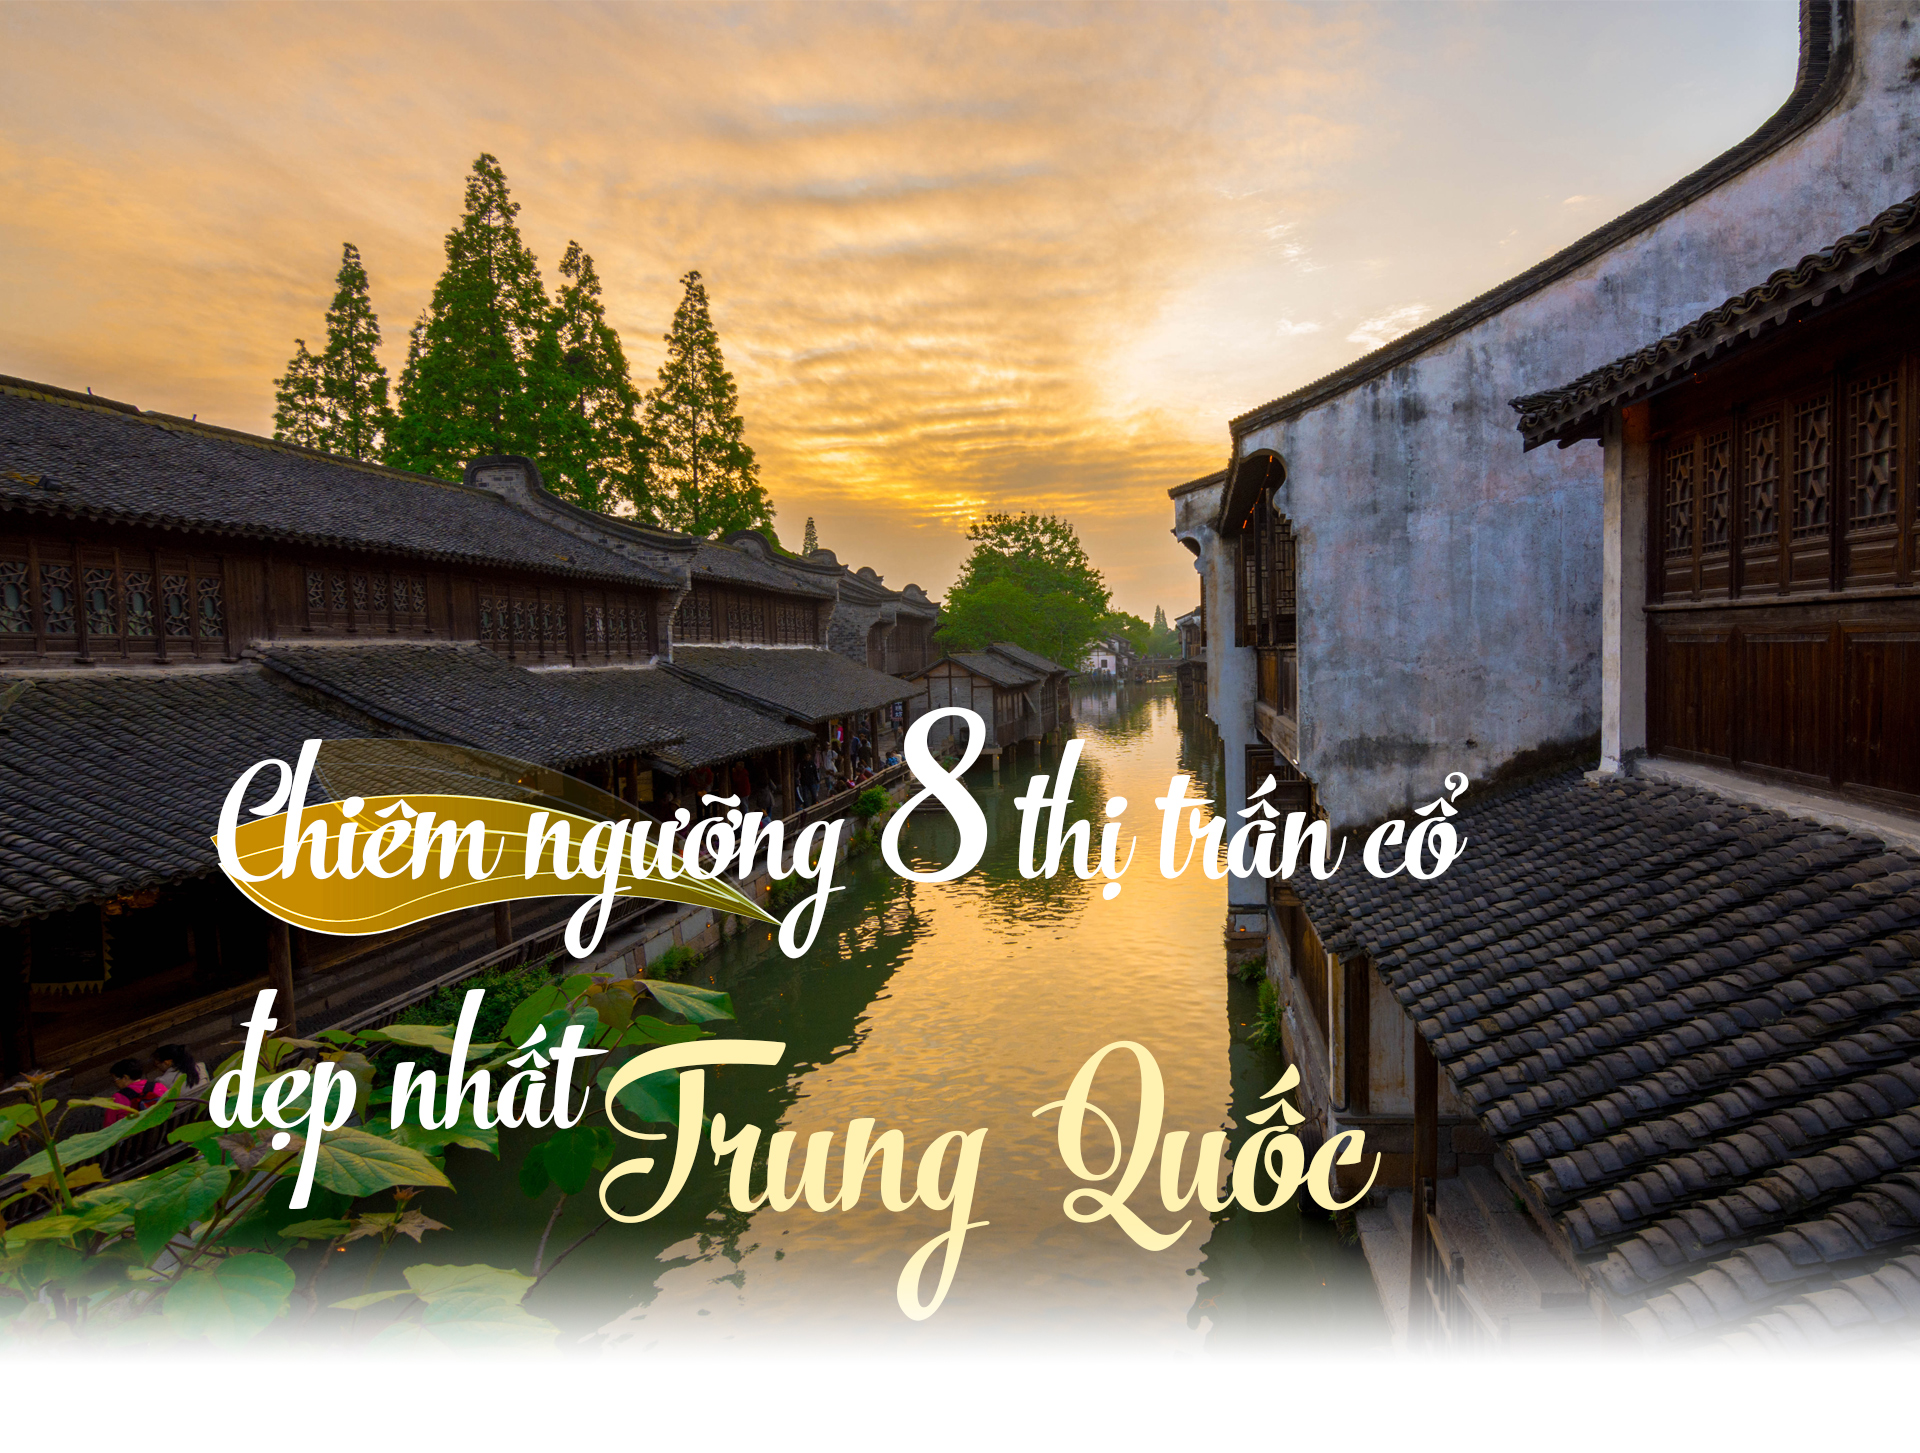 Chiêm ngưỡng 8 thị trấn cổ đẹp nhất Trung Quốc - 1